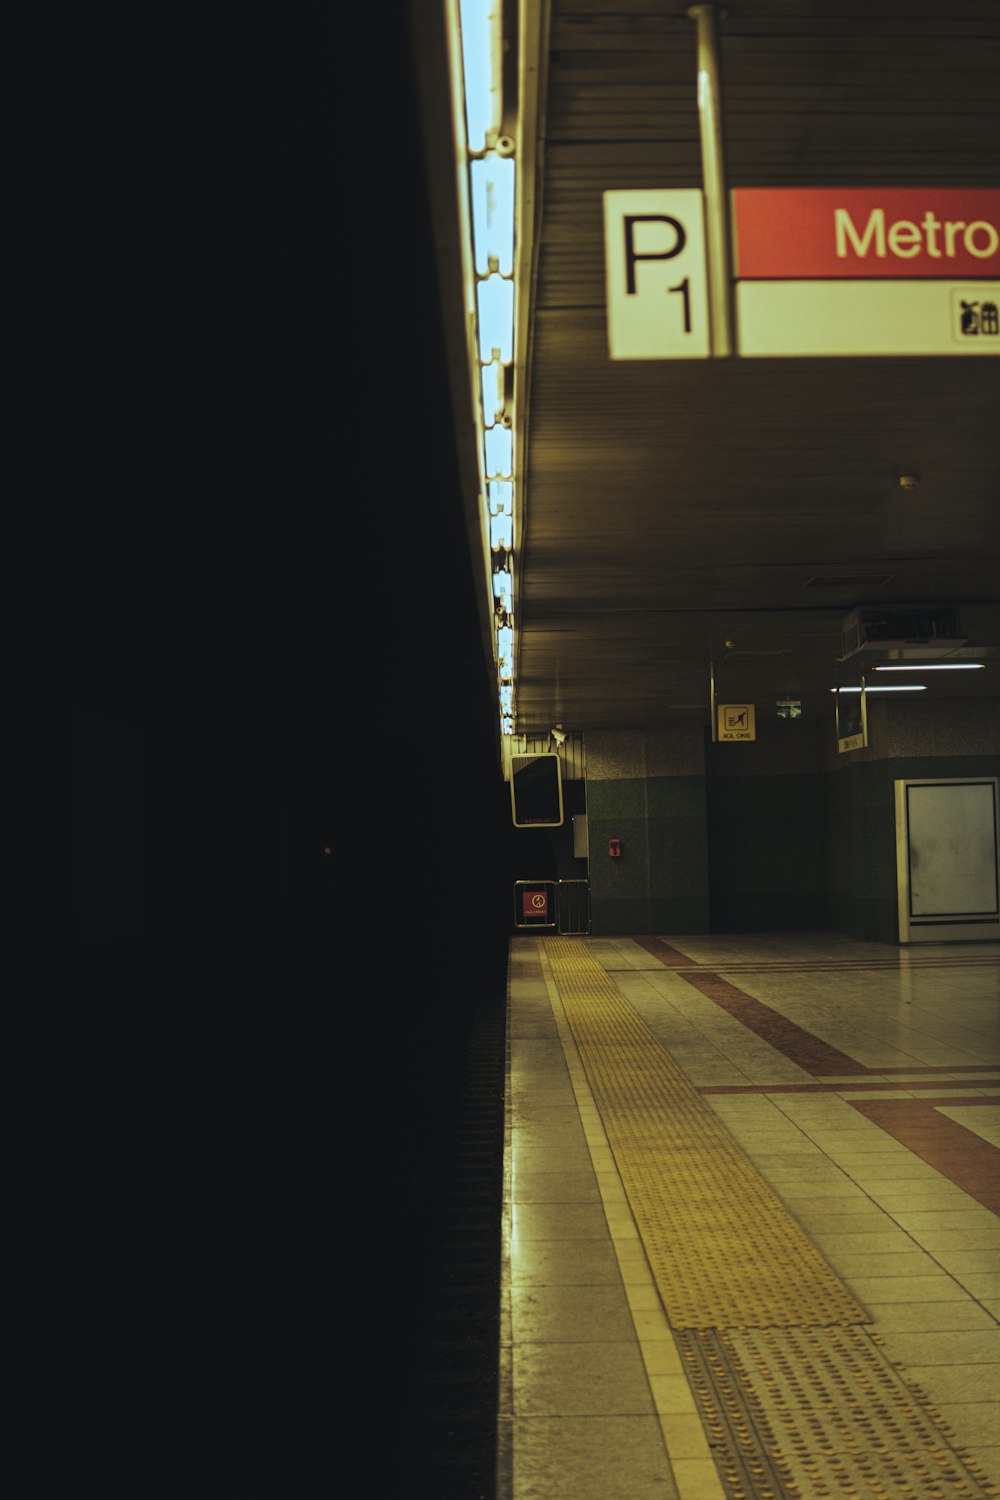 Une station de métro avec un panneau indiquant Metro